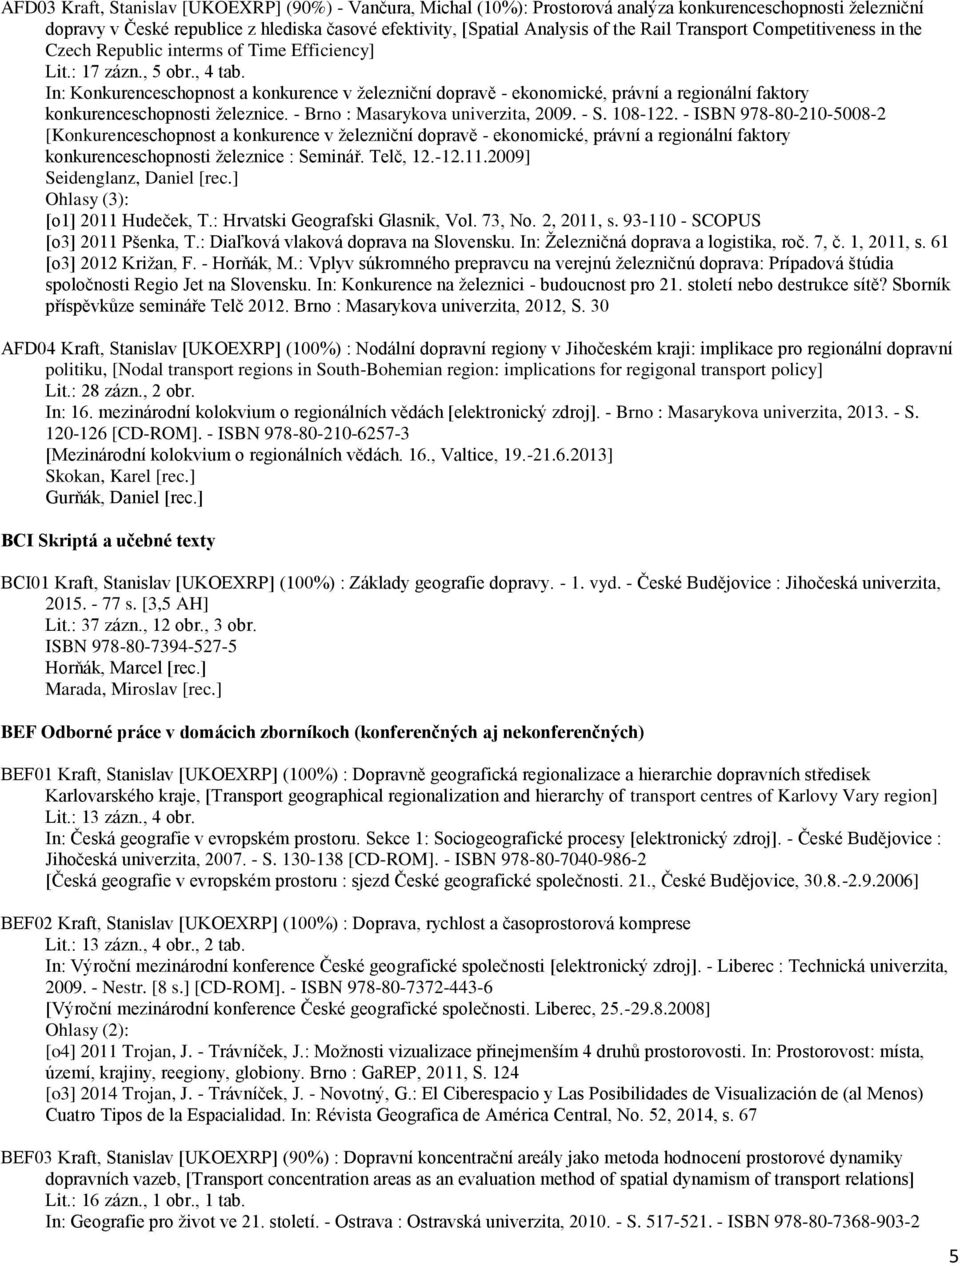 In: Konkurenceschopnost a konkurence v železniční dopravě - ekonomické, právní a regionální faktory konkurenceschopnosti železnice. - Brno : Masarykova univerzita, 2009. - S. 108-122.